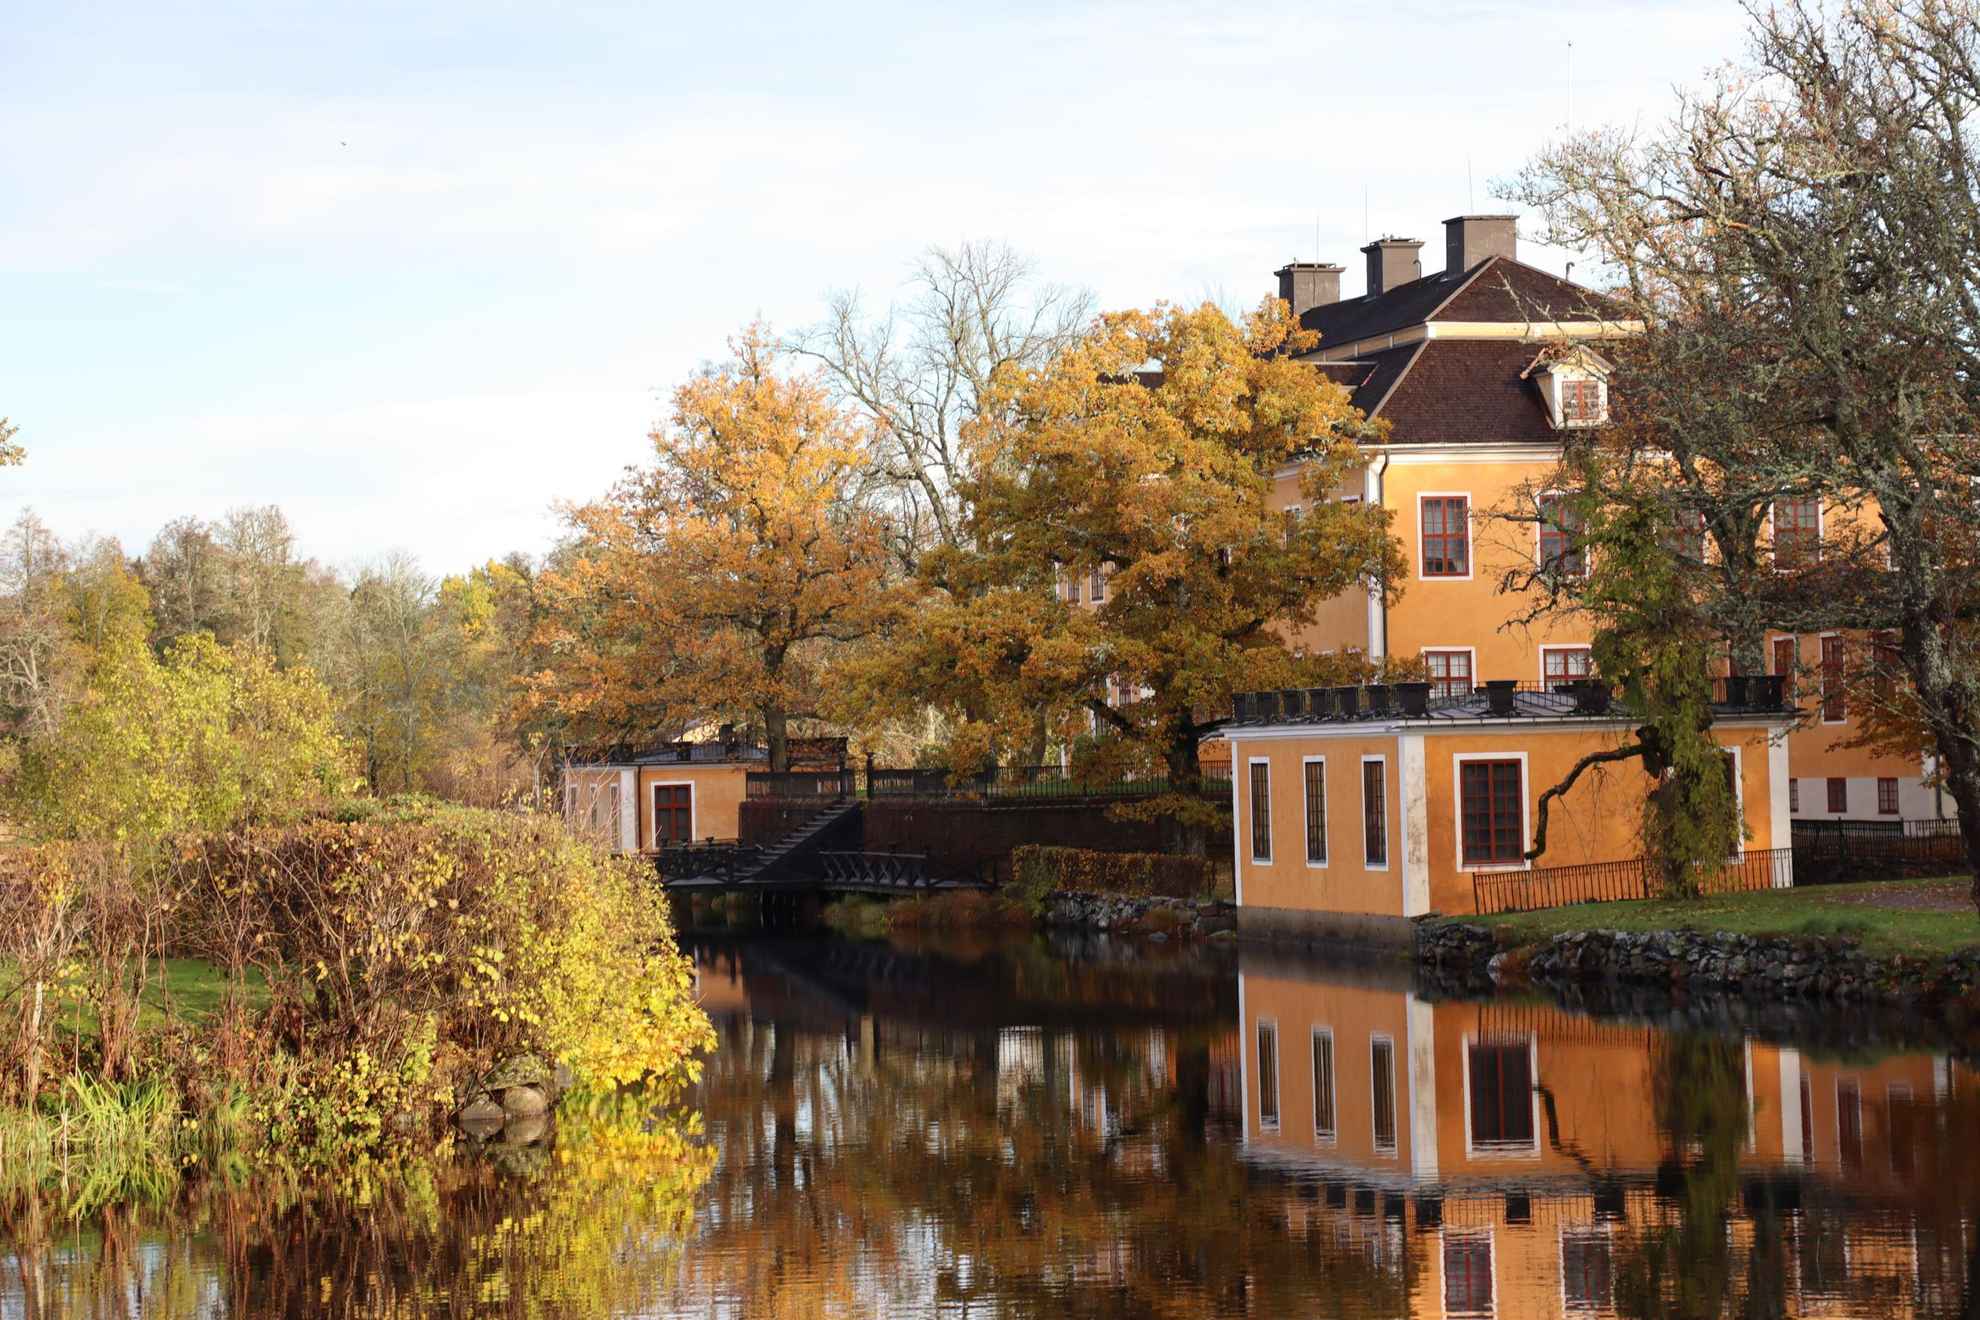 Die Häuser von Lövstabruk mit orangefarbener Fassade und weißen Verzierungen neben dem Wasser.